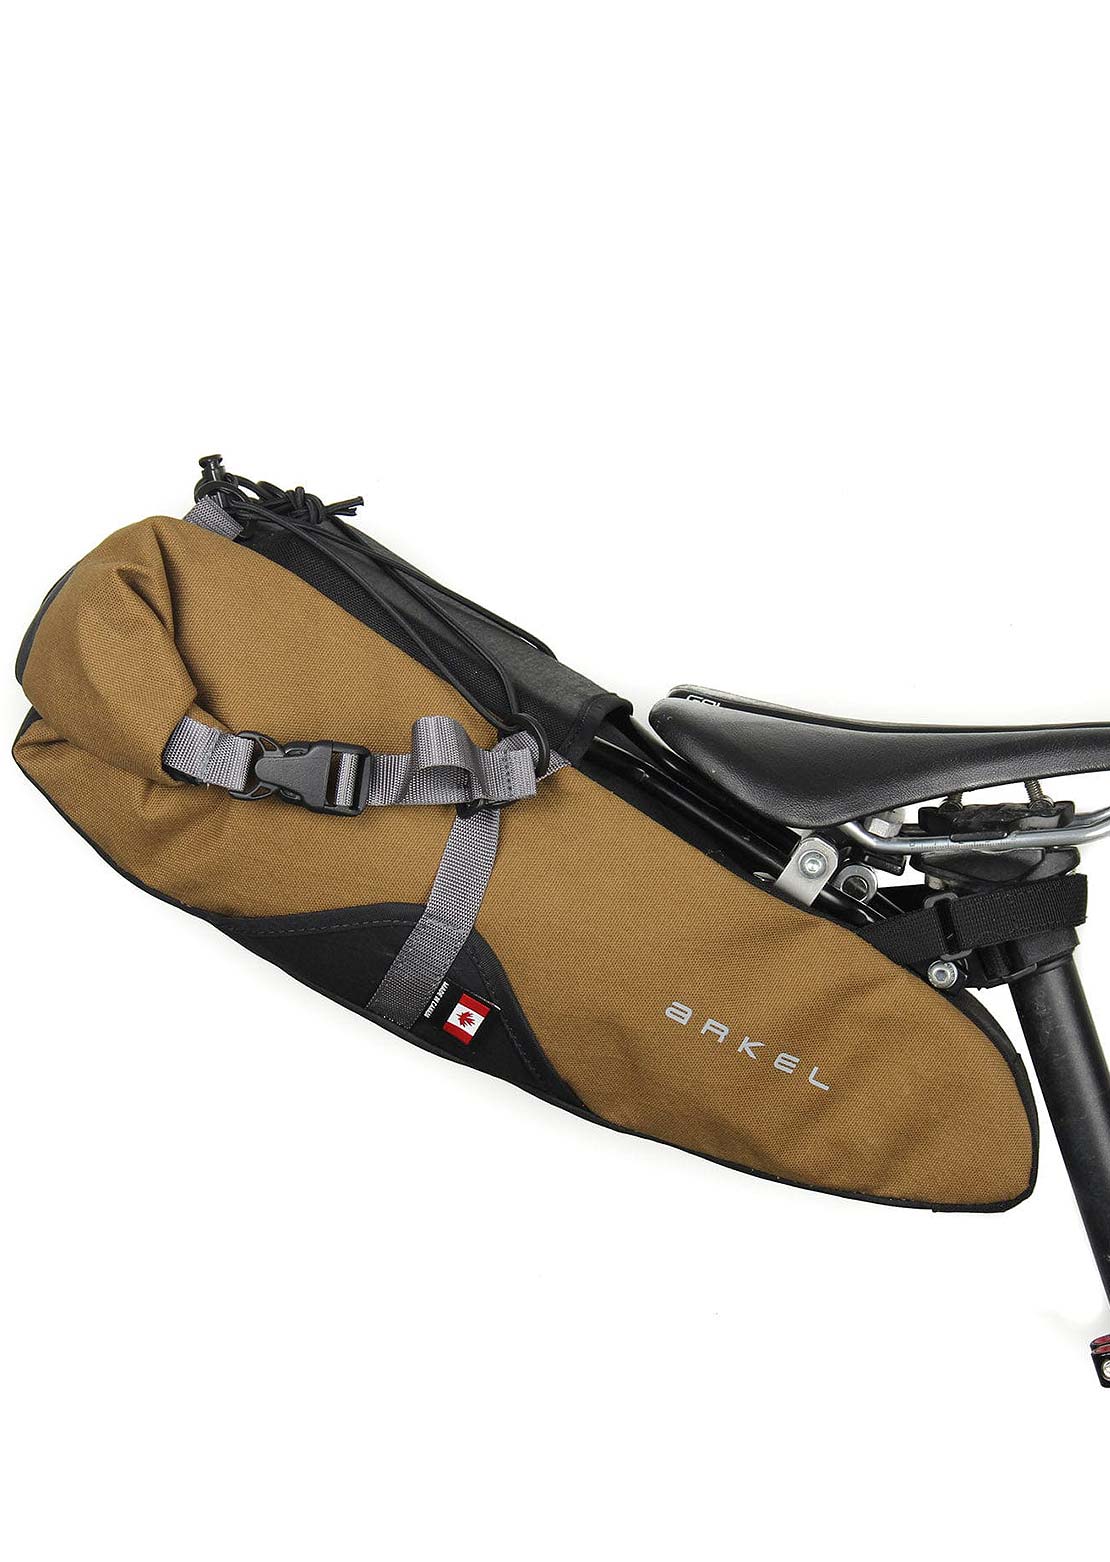 Arkel Seatpacker Hanger & Bag Bikepacking Seat Bag Kit Mountain Brown